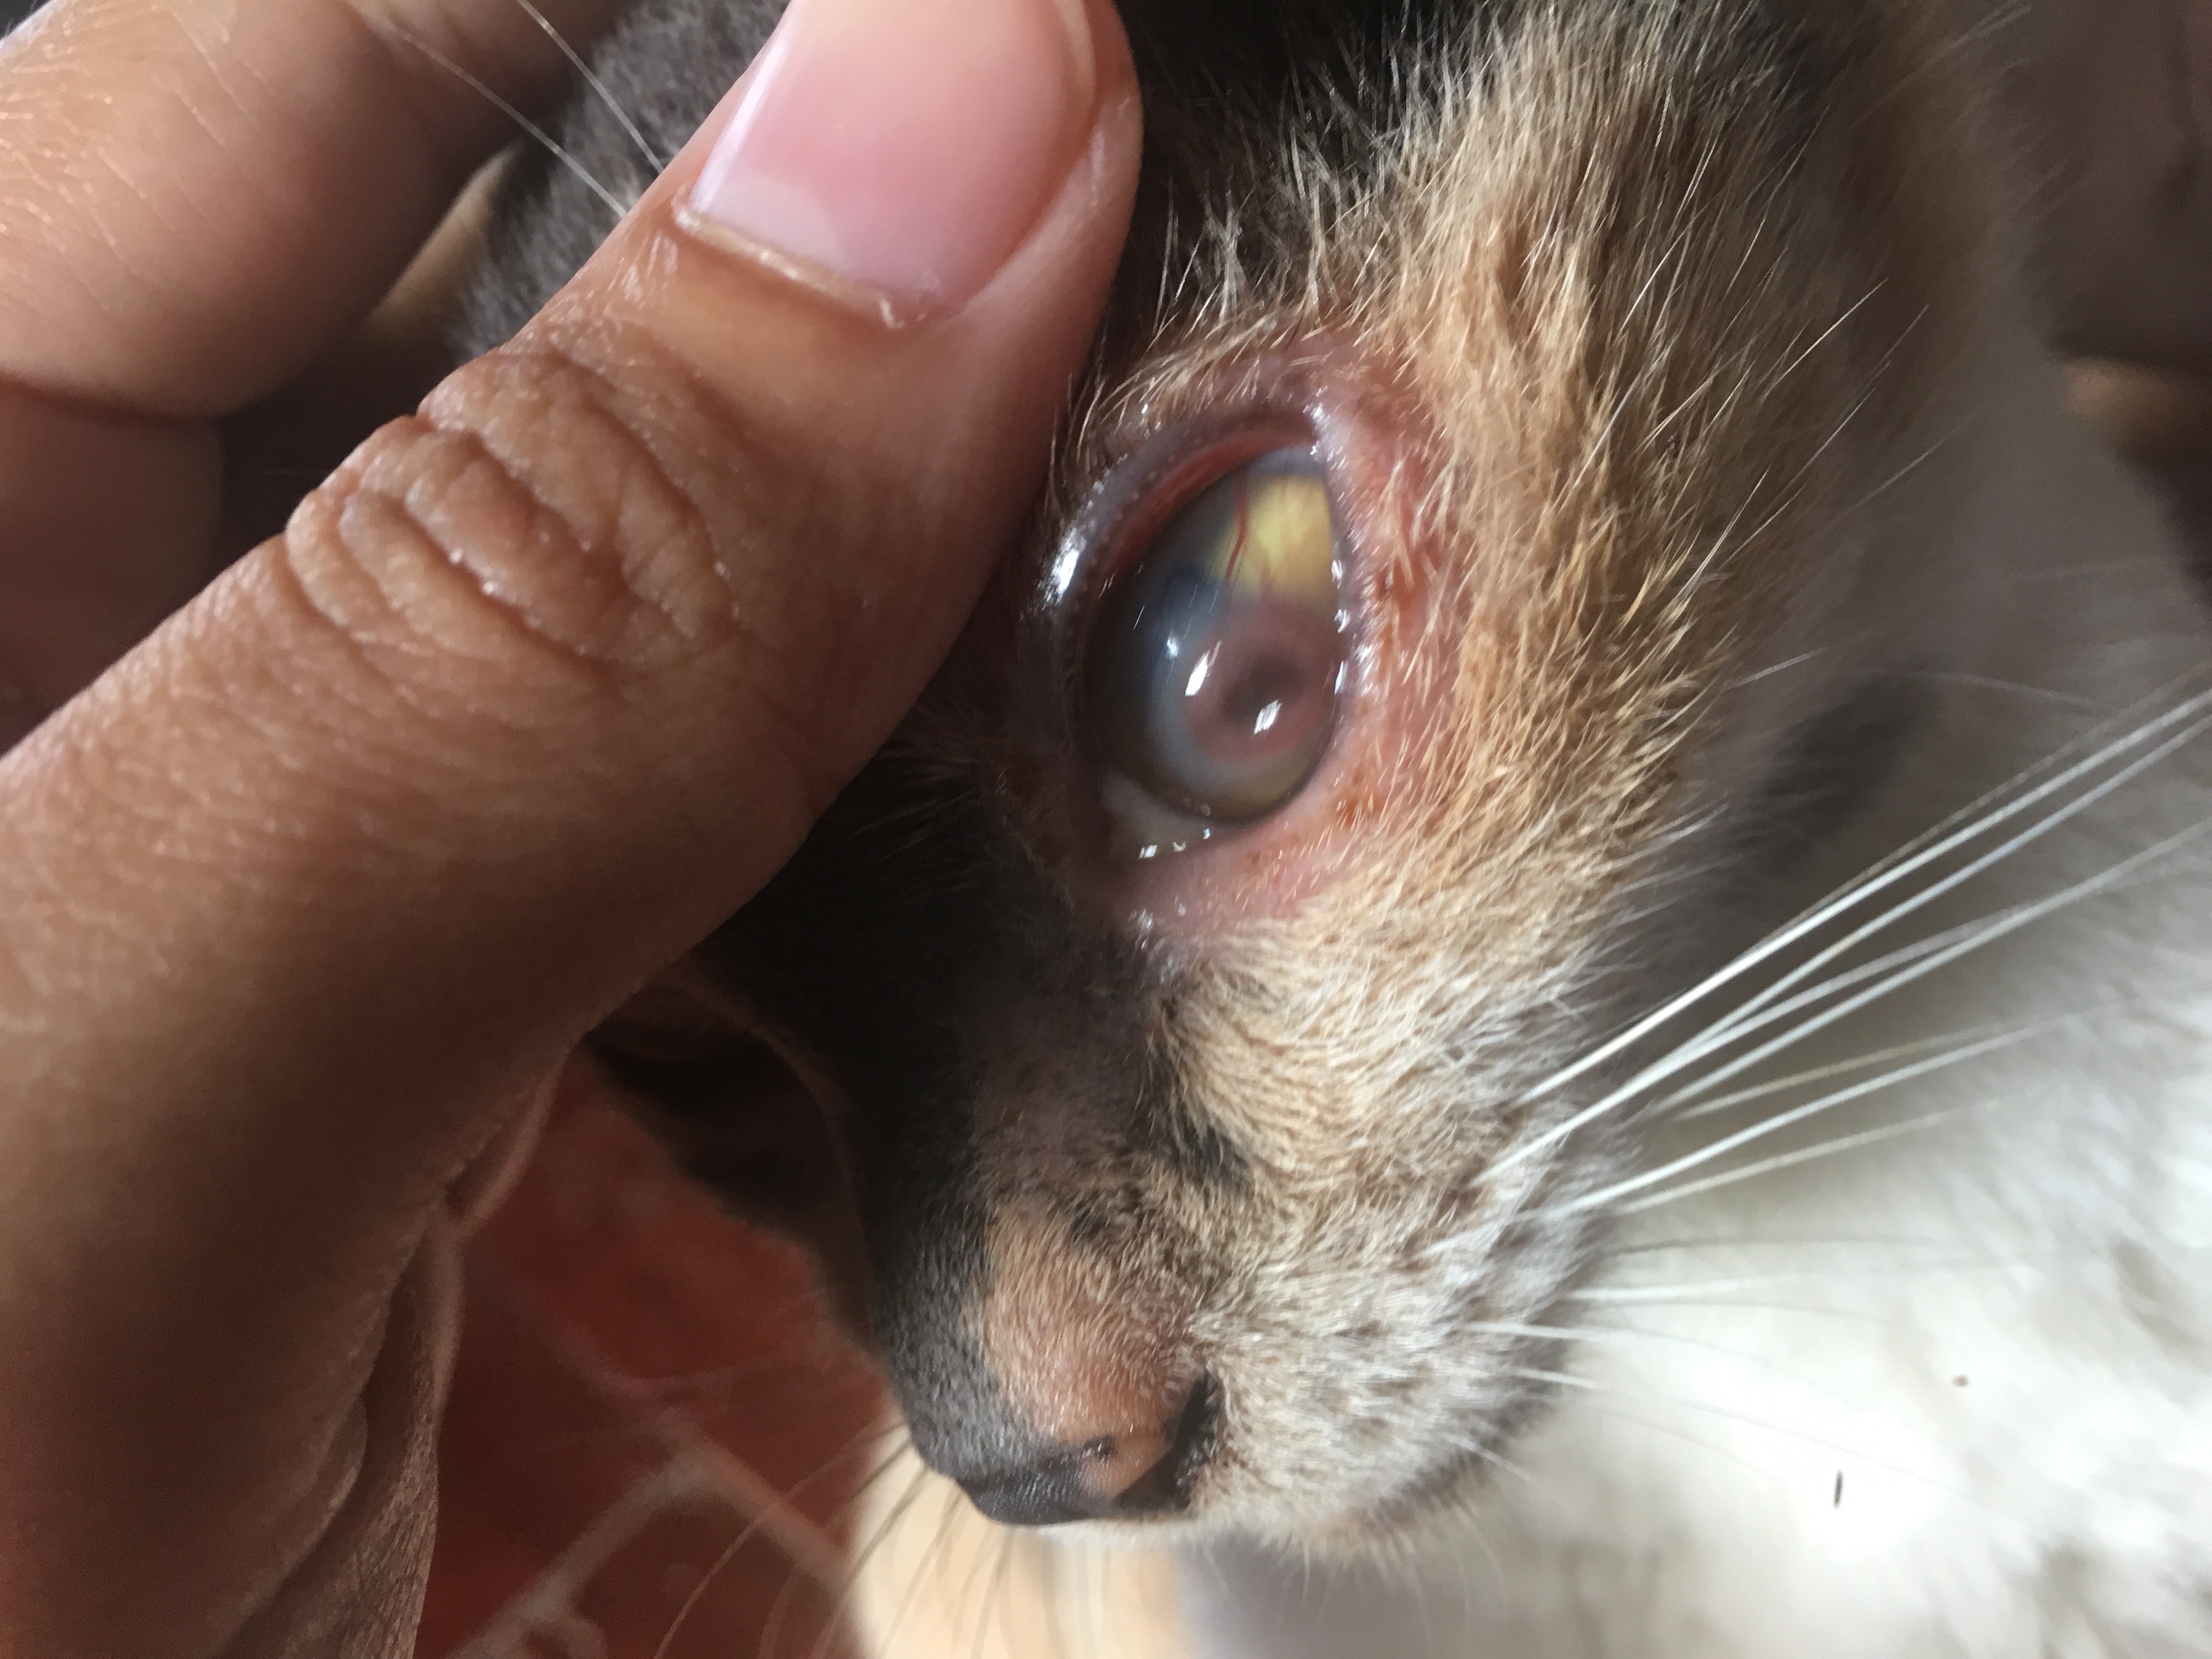 แมวที่บ้านตาเป็นไรไม่รู้คะ สงสารเเมวมาก. เเถวบ้านไม่มีสัตวเเพทย์ สามารถรักษาเบื้องต้นยังไรได้บ้างคะ 